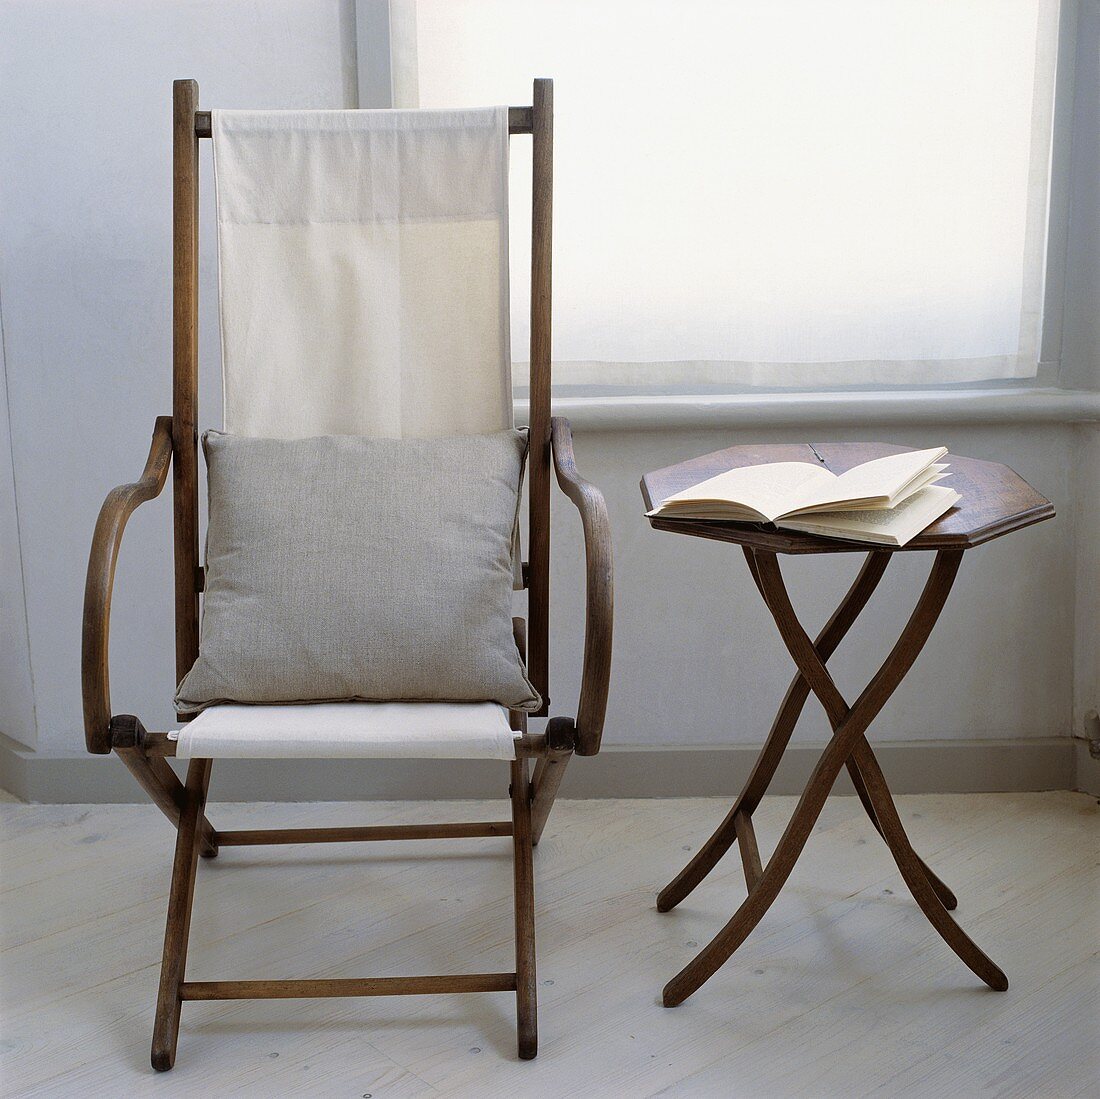 Antique Campaign-Stuhl mit weißem Kissen neben einem kleinen achteckigen Tisch